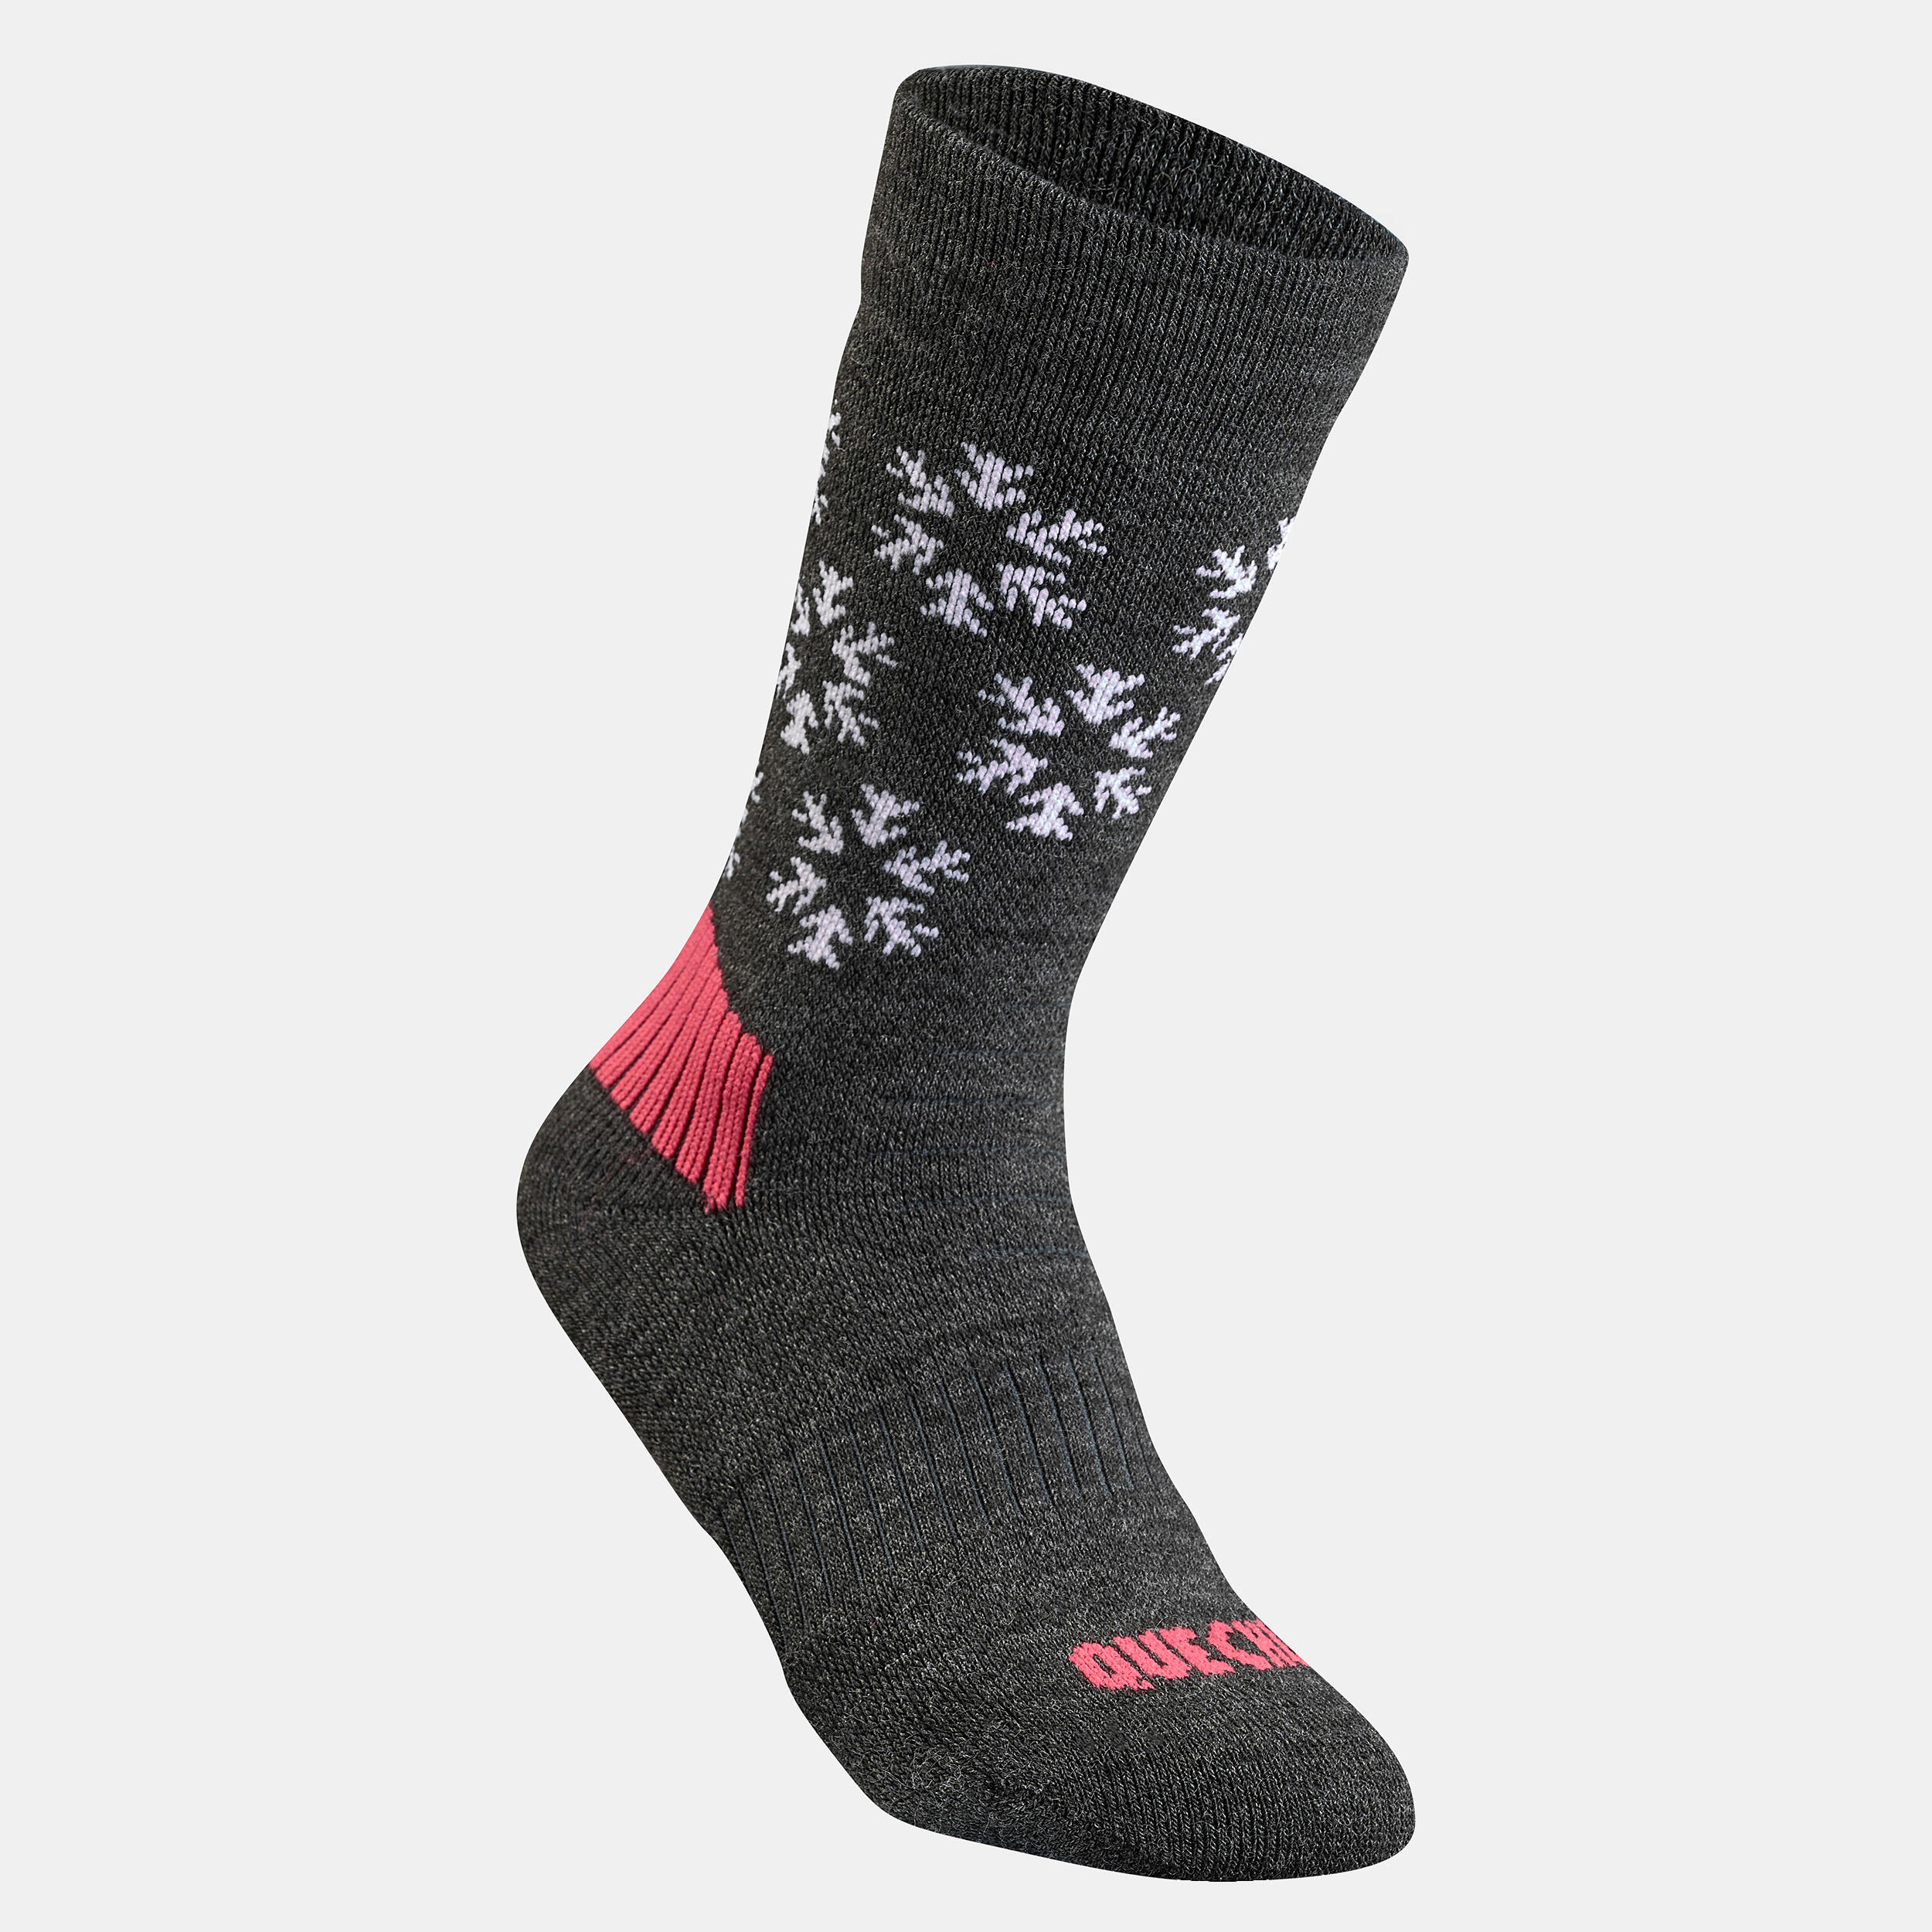 Kids’ Warm Hiking Socks SH100 Mid 2 Pairs 6/9